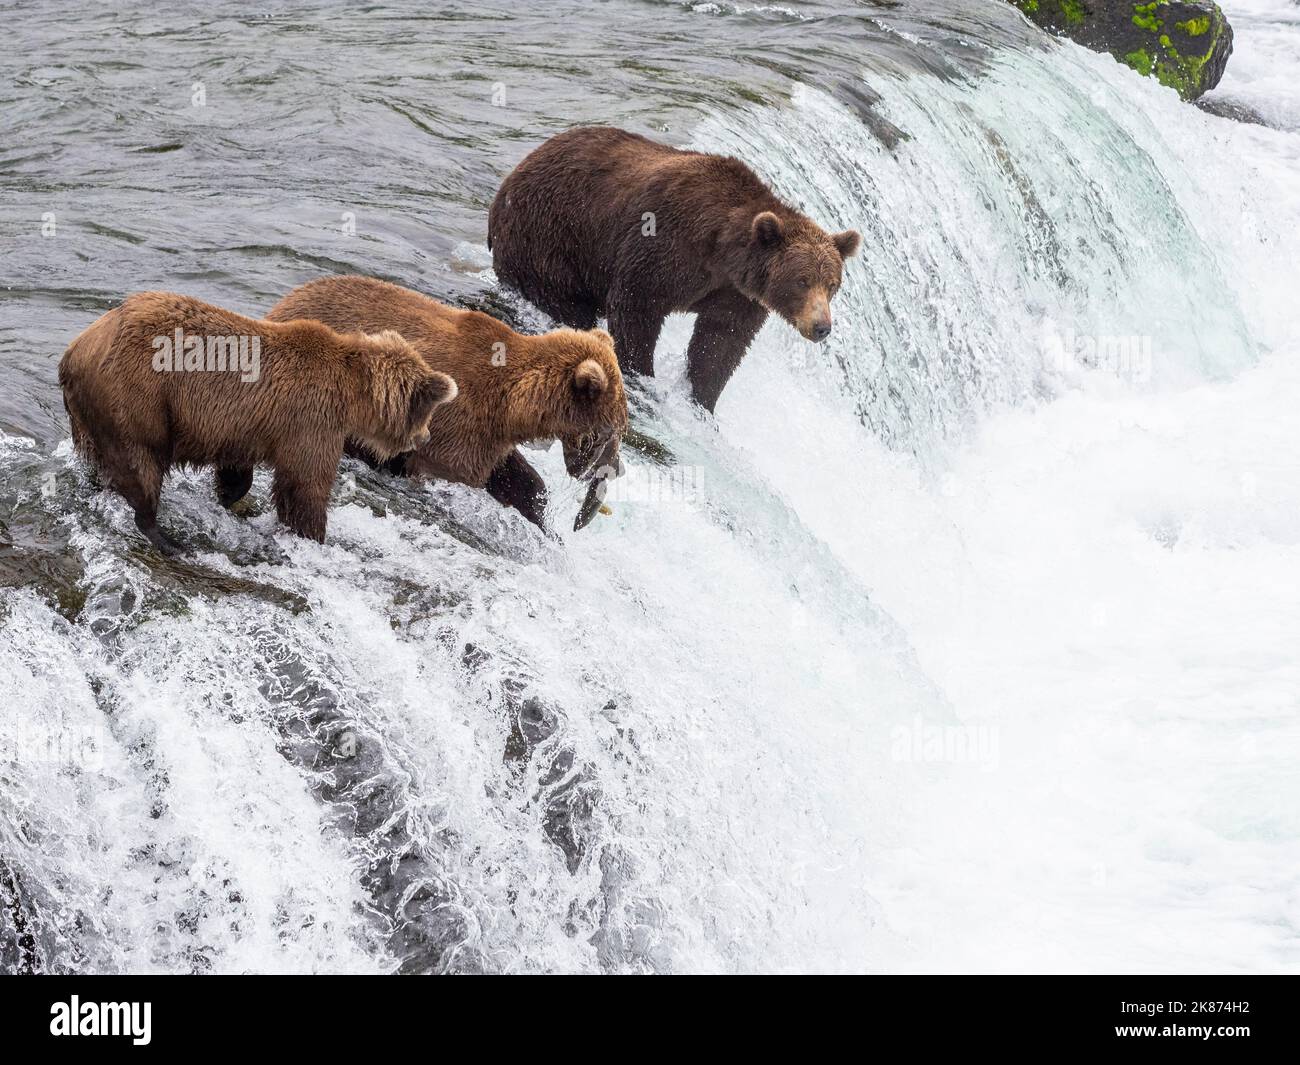 Ours bruns adultes (Ursus arctos) pêchant du saumon aux chutes Brooks, parc national et réserve de Katmai, Alaska, États-Unis d'Amérique Banque D'Images